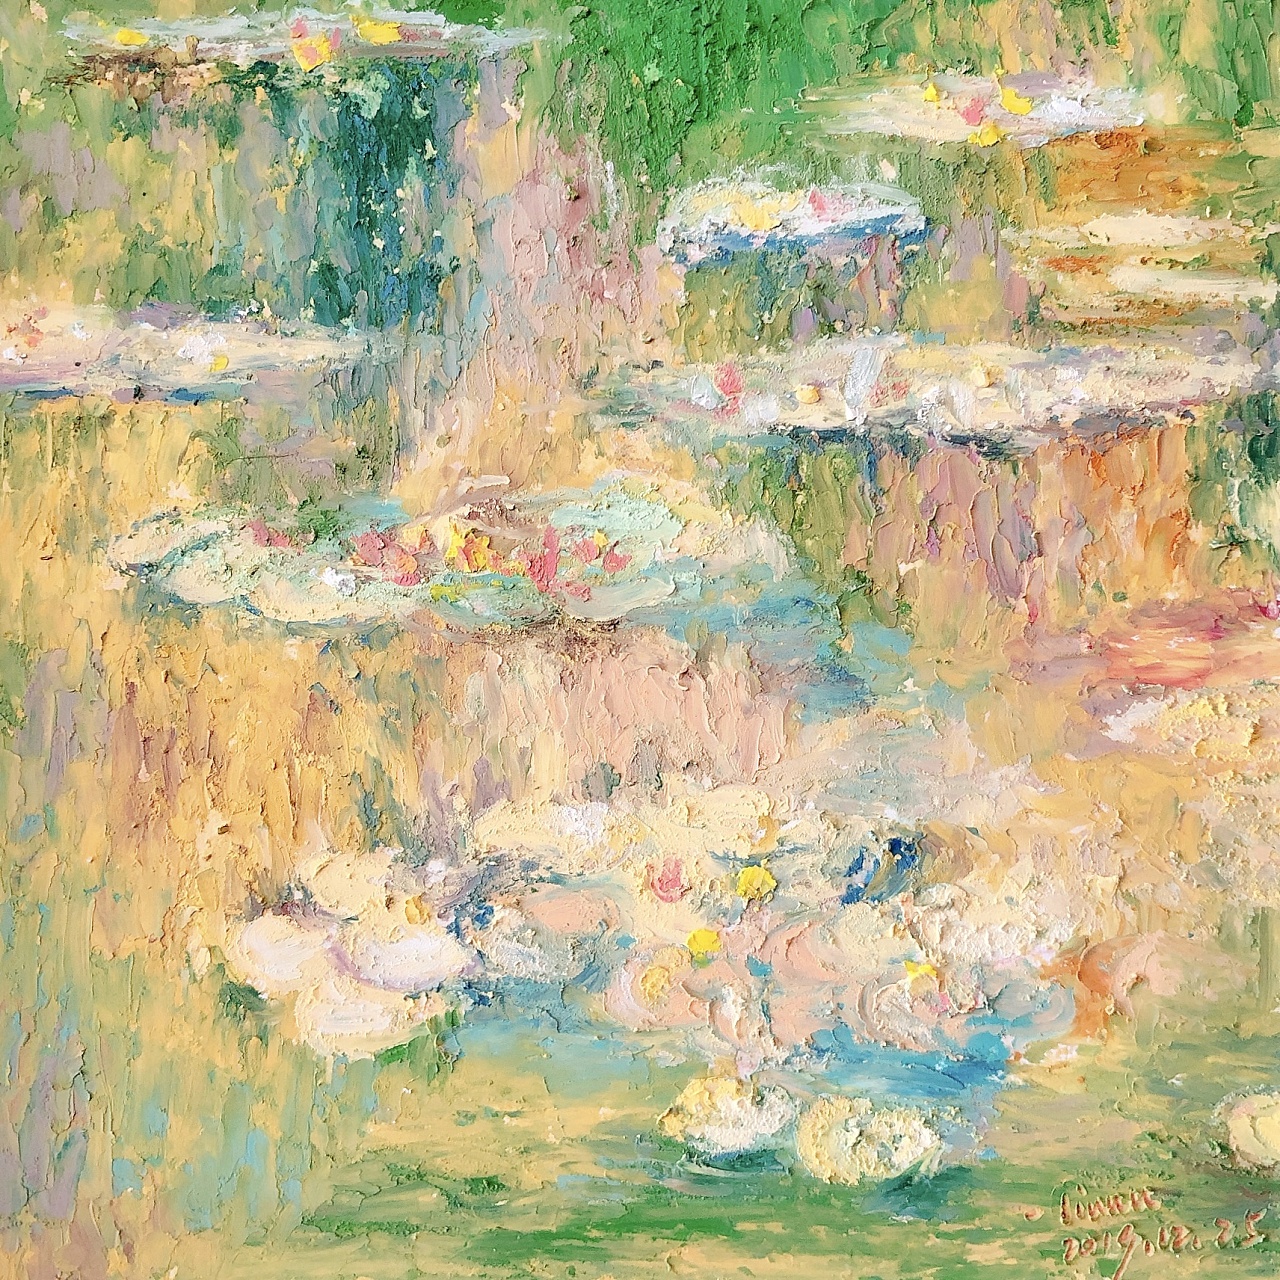 Irises in Monet's Garden, 1900 | SELECTIONS FOR QLEMRTZ | Pinterest